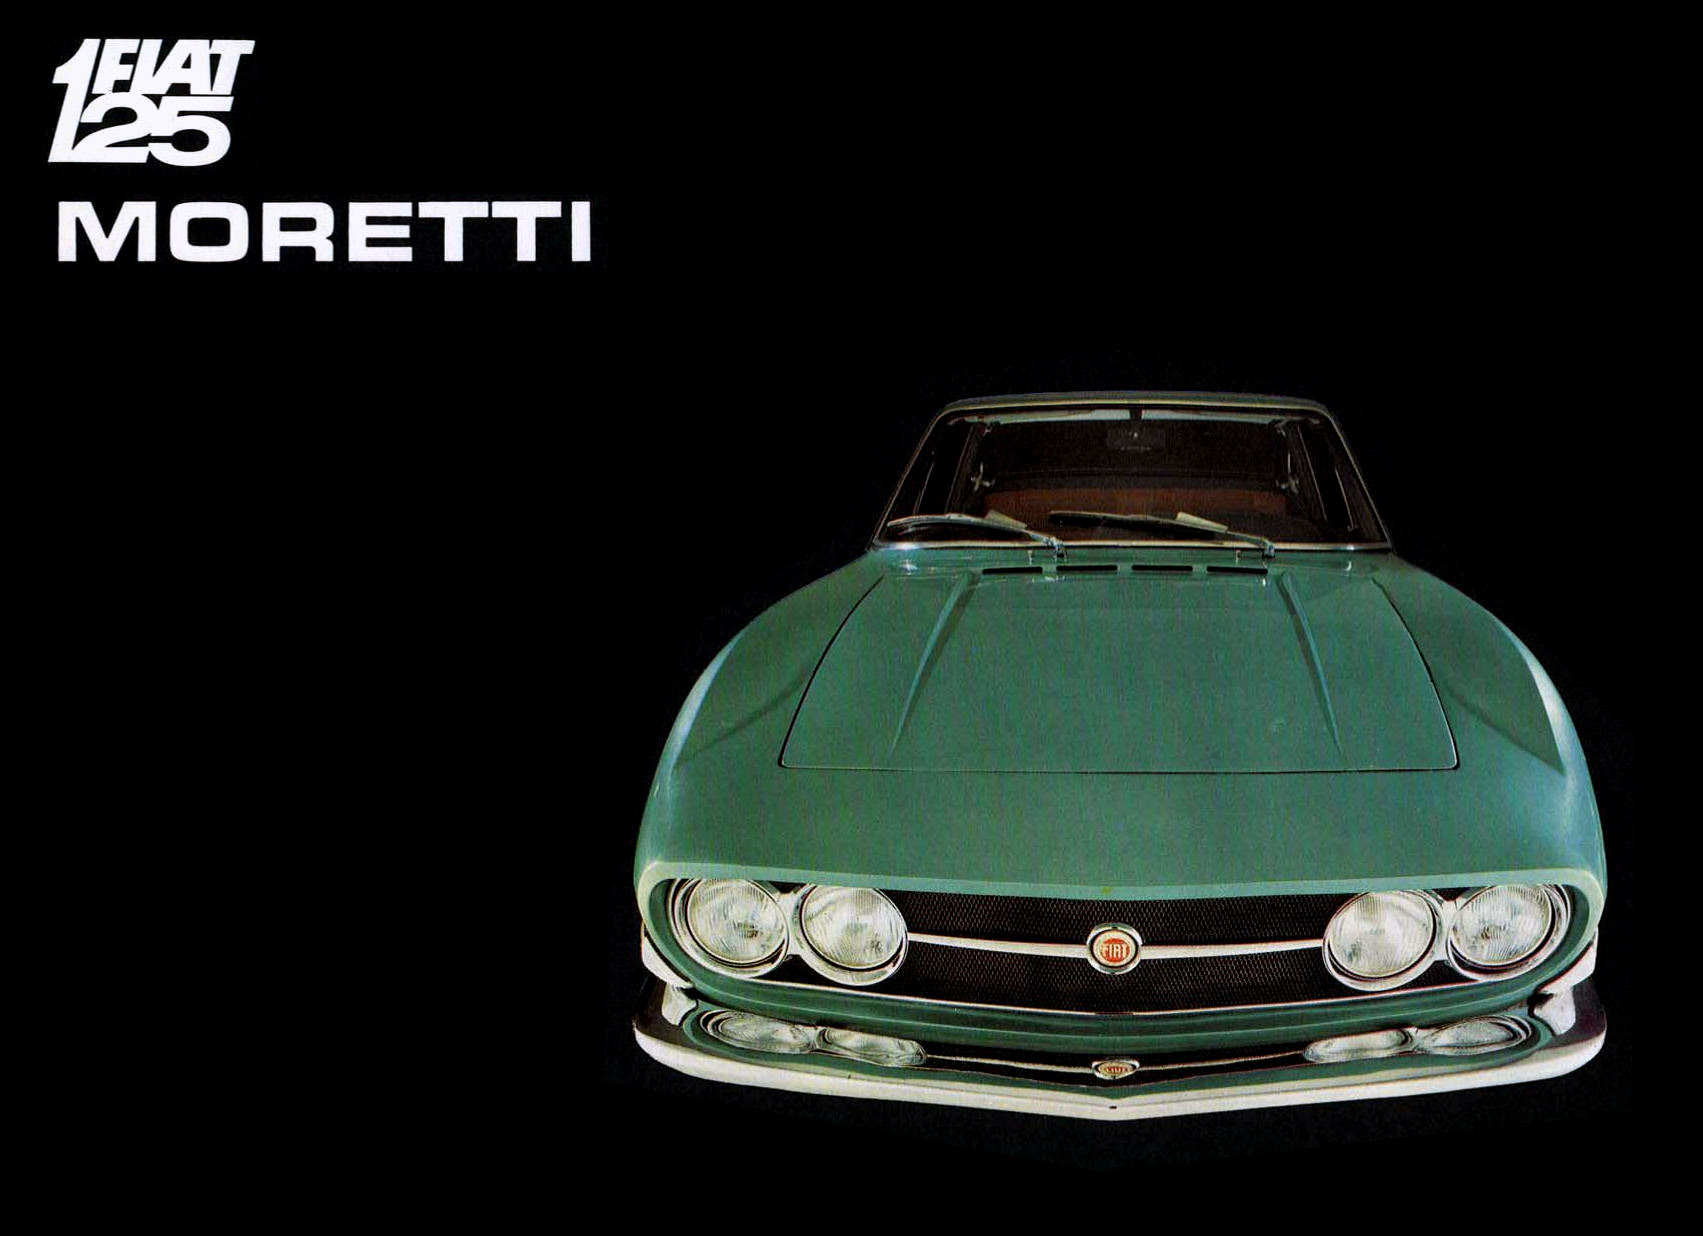 Fiat 125 GS 1.6 Coupé (Moretti) - Brochure